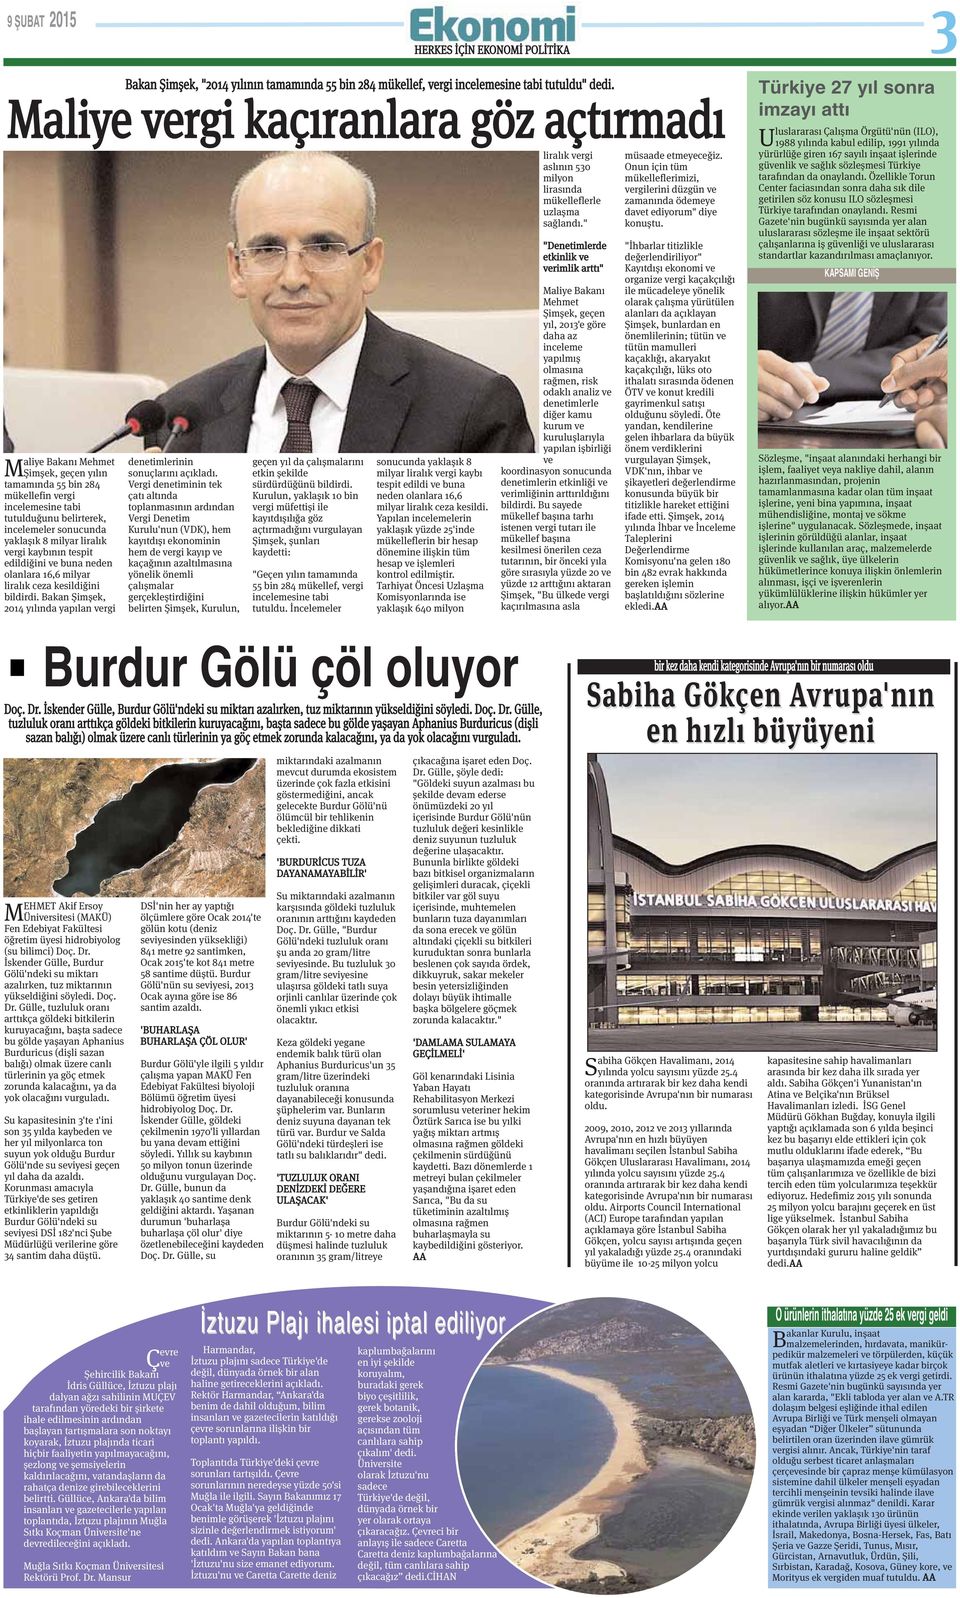 Bakan Şimşek, 2014 yılında yapılan vergi Bakan Şimşek, "2014 yılının tamamında 55 bin 284 mükellef, vergi incelemesine tabi tutuldu" dedi.